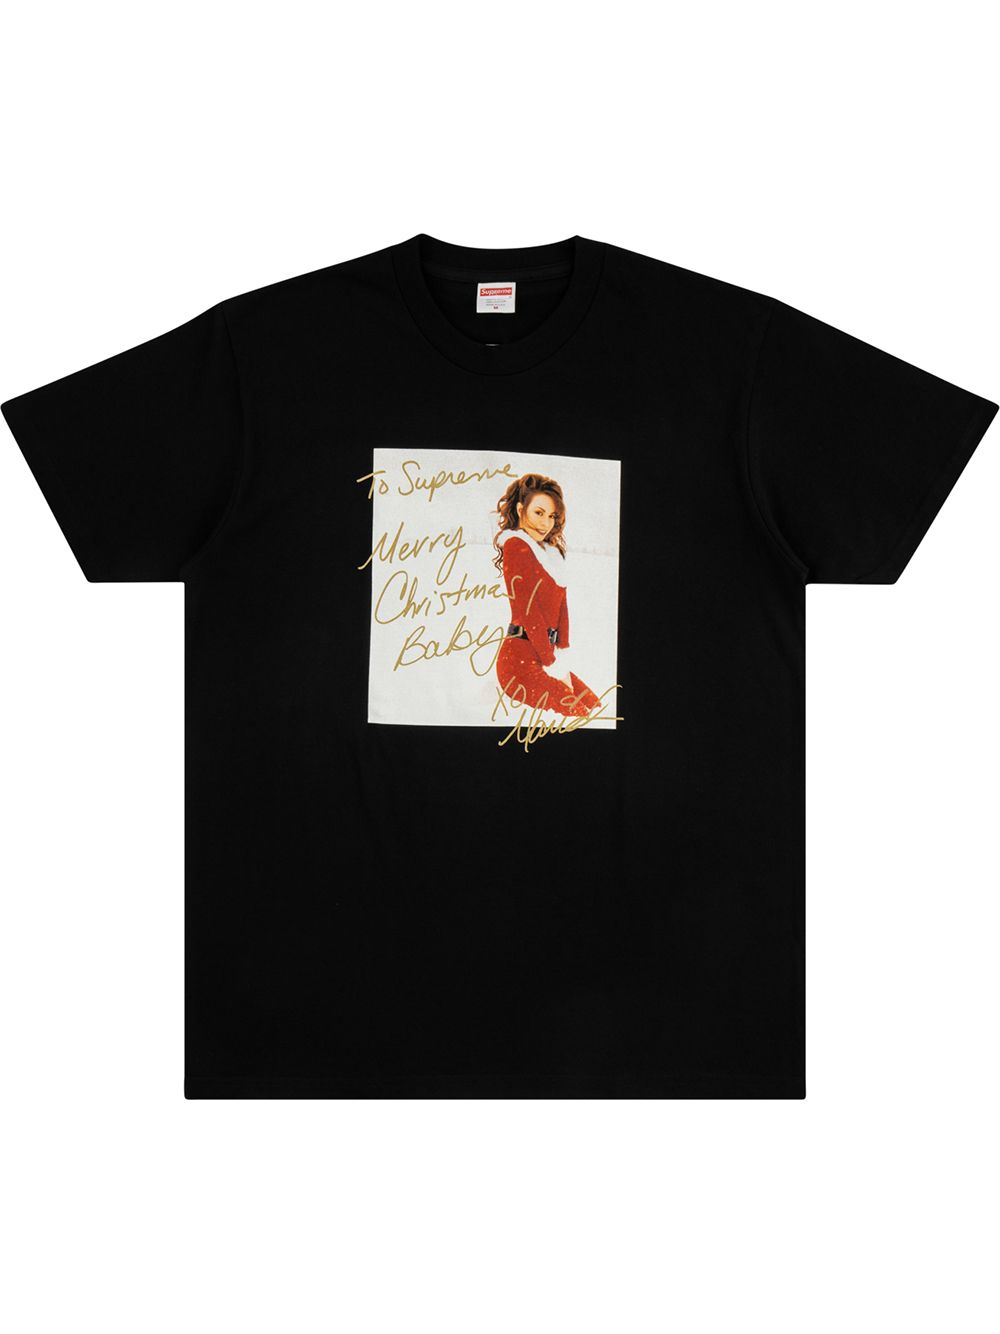 Mariah Carey T-shirt 